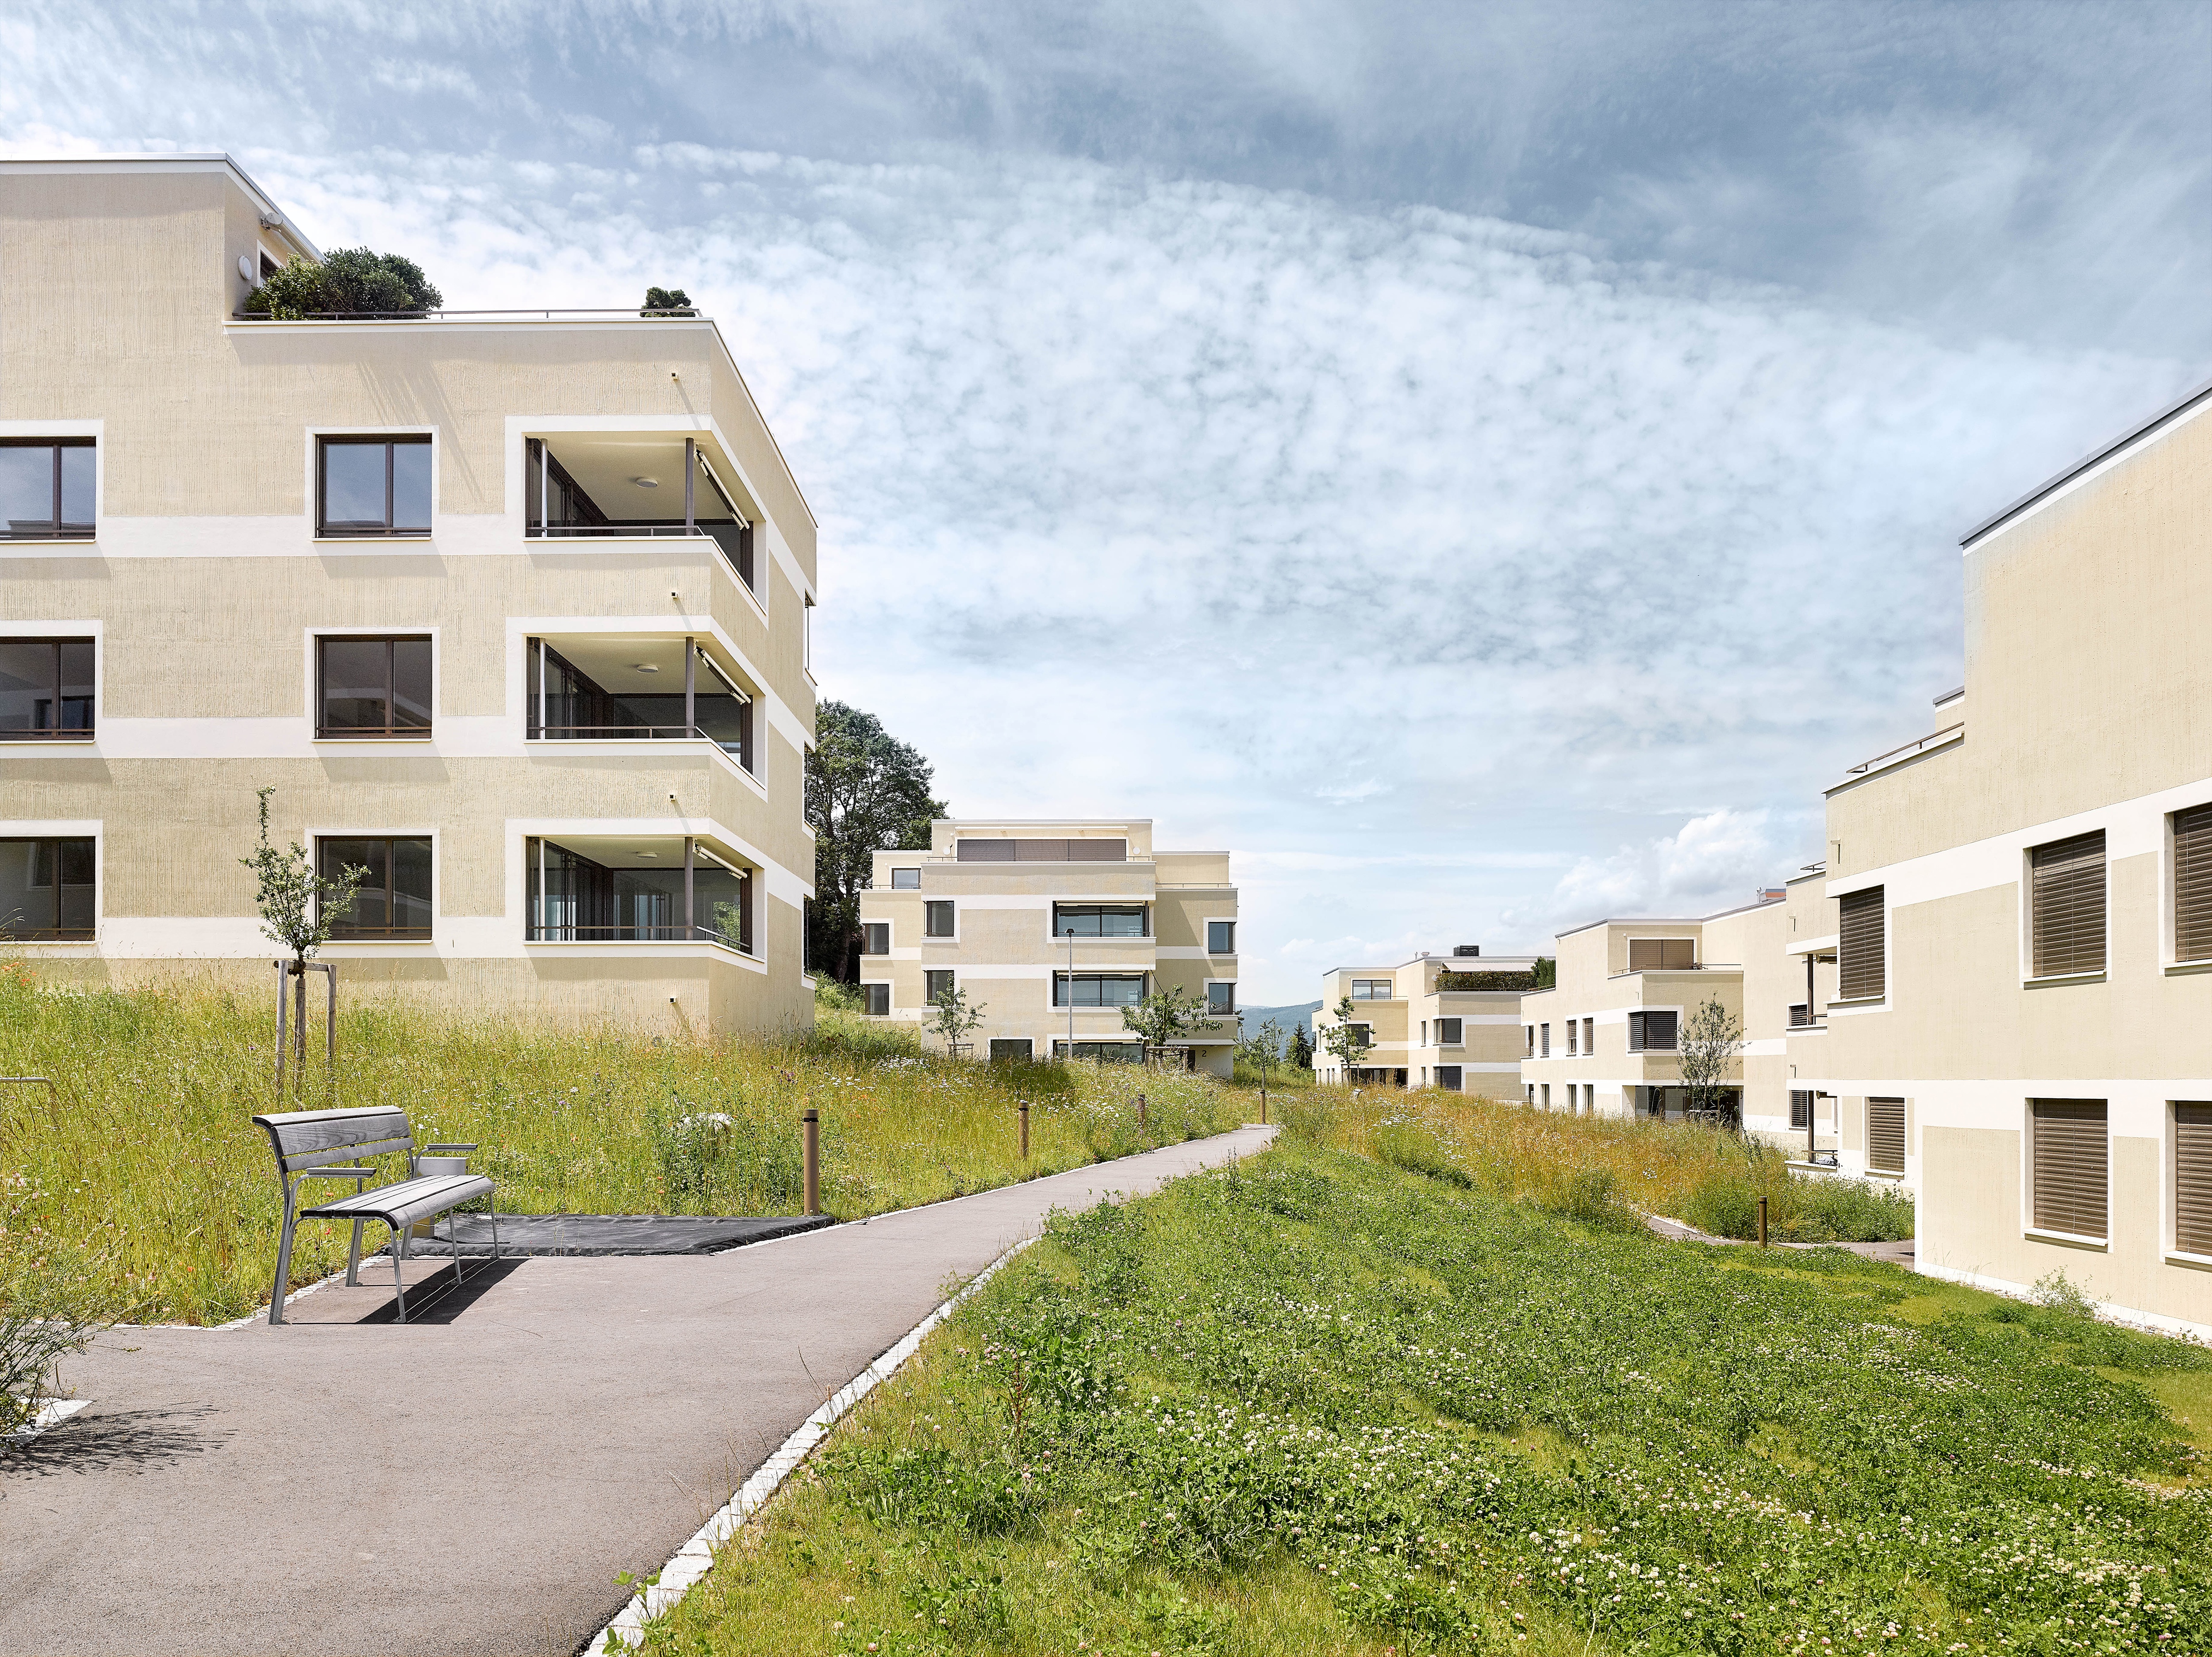 rollimarchini AG, Architekten Bern, Architektur, Wohnübergauung Bellvuepark, Port, Wettbewerb, Neubau, Wohnen